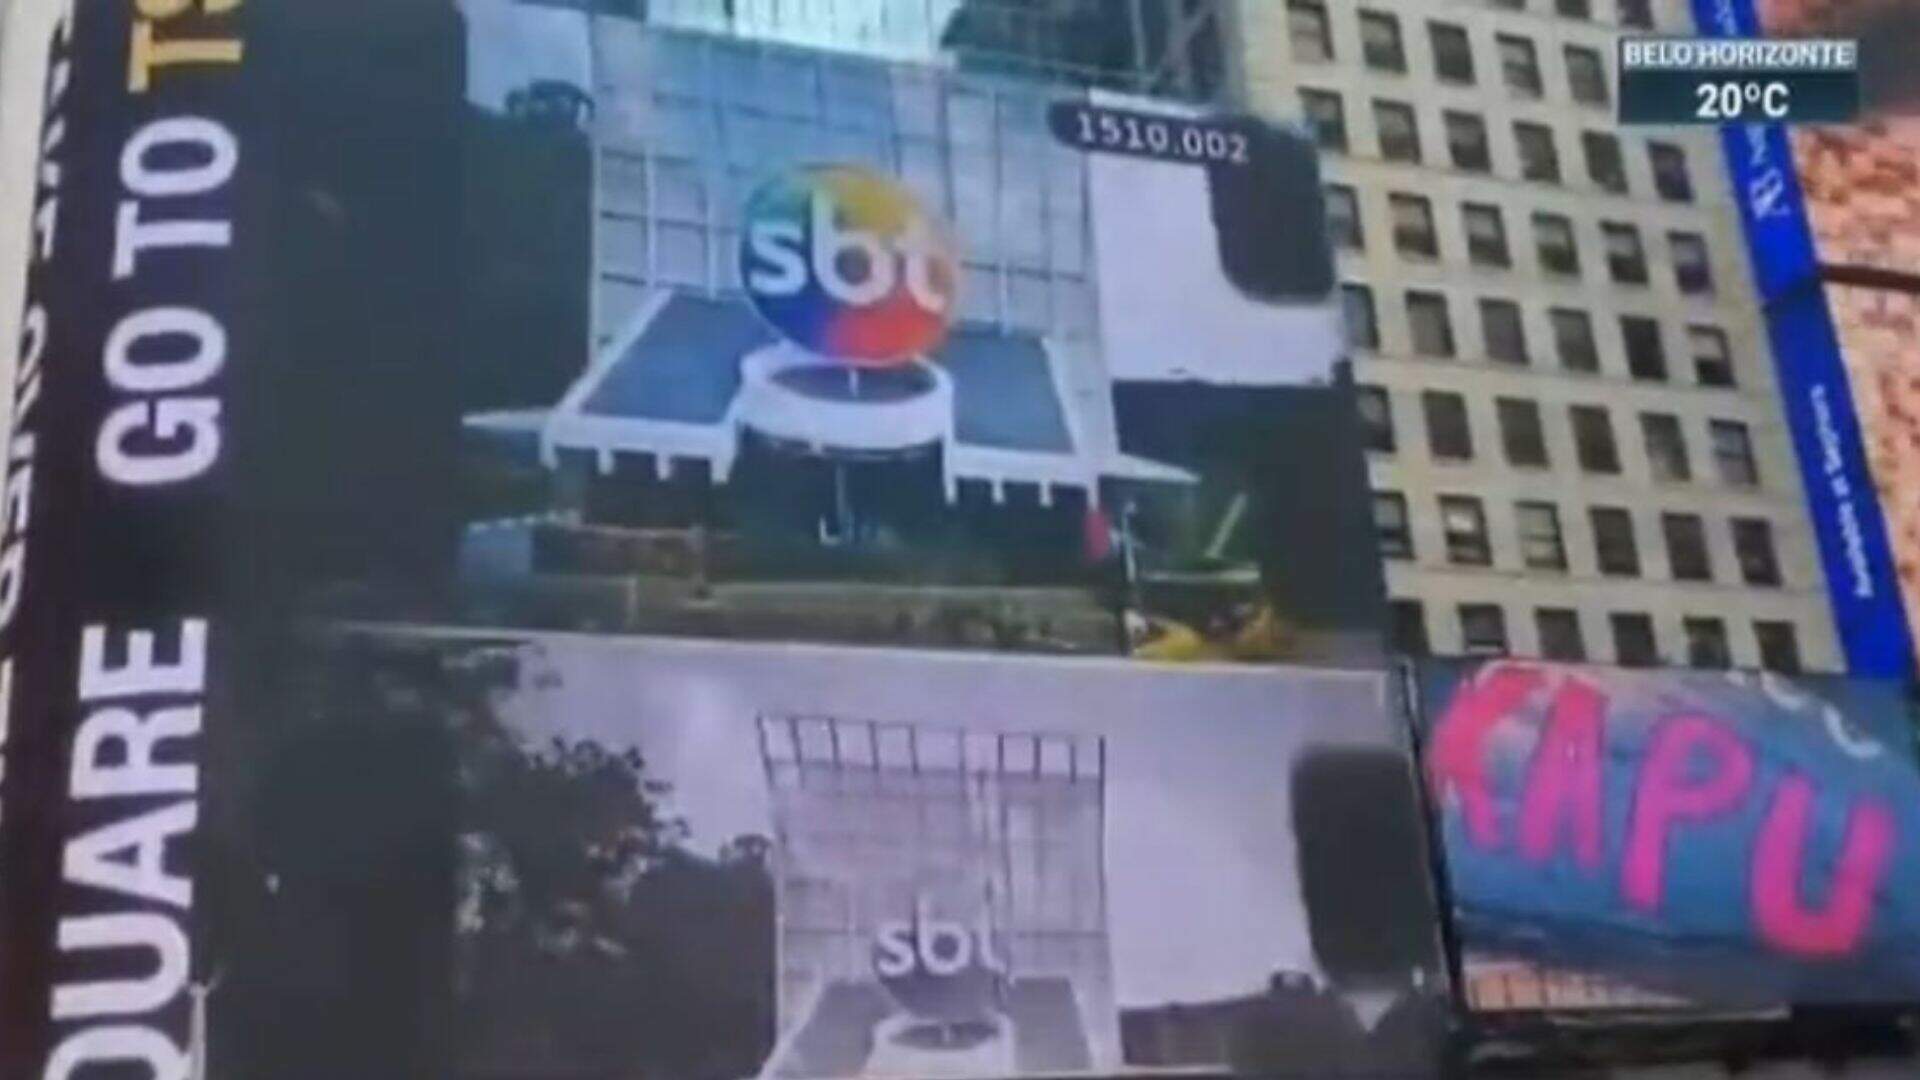 Apresentador do SBT paga para colocar vídeo da emissora na Times Square e momento vira chacota na web - Metropolitana FM